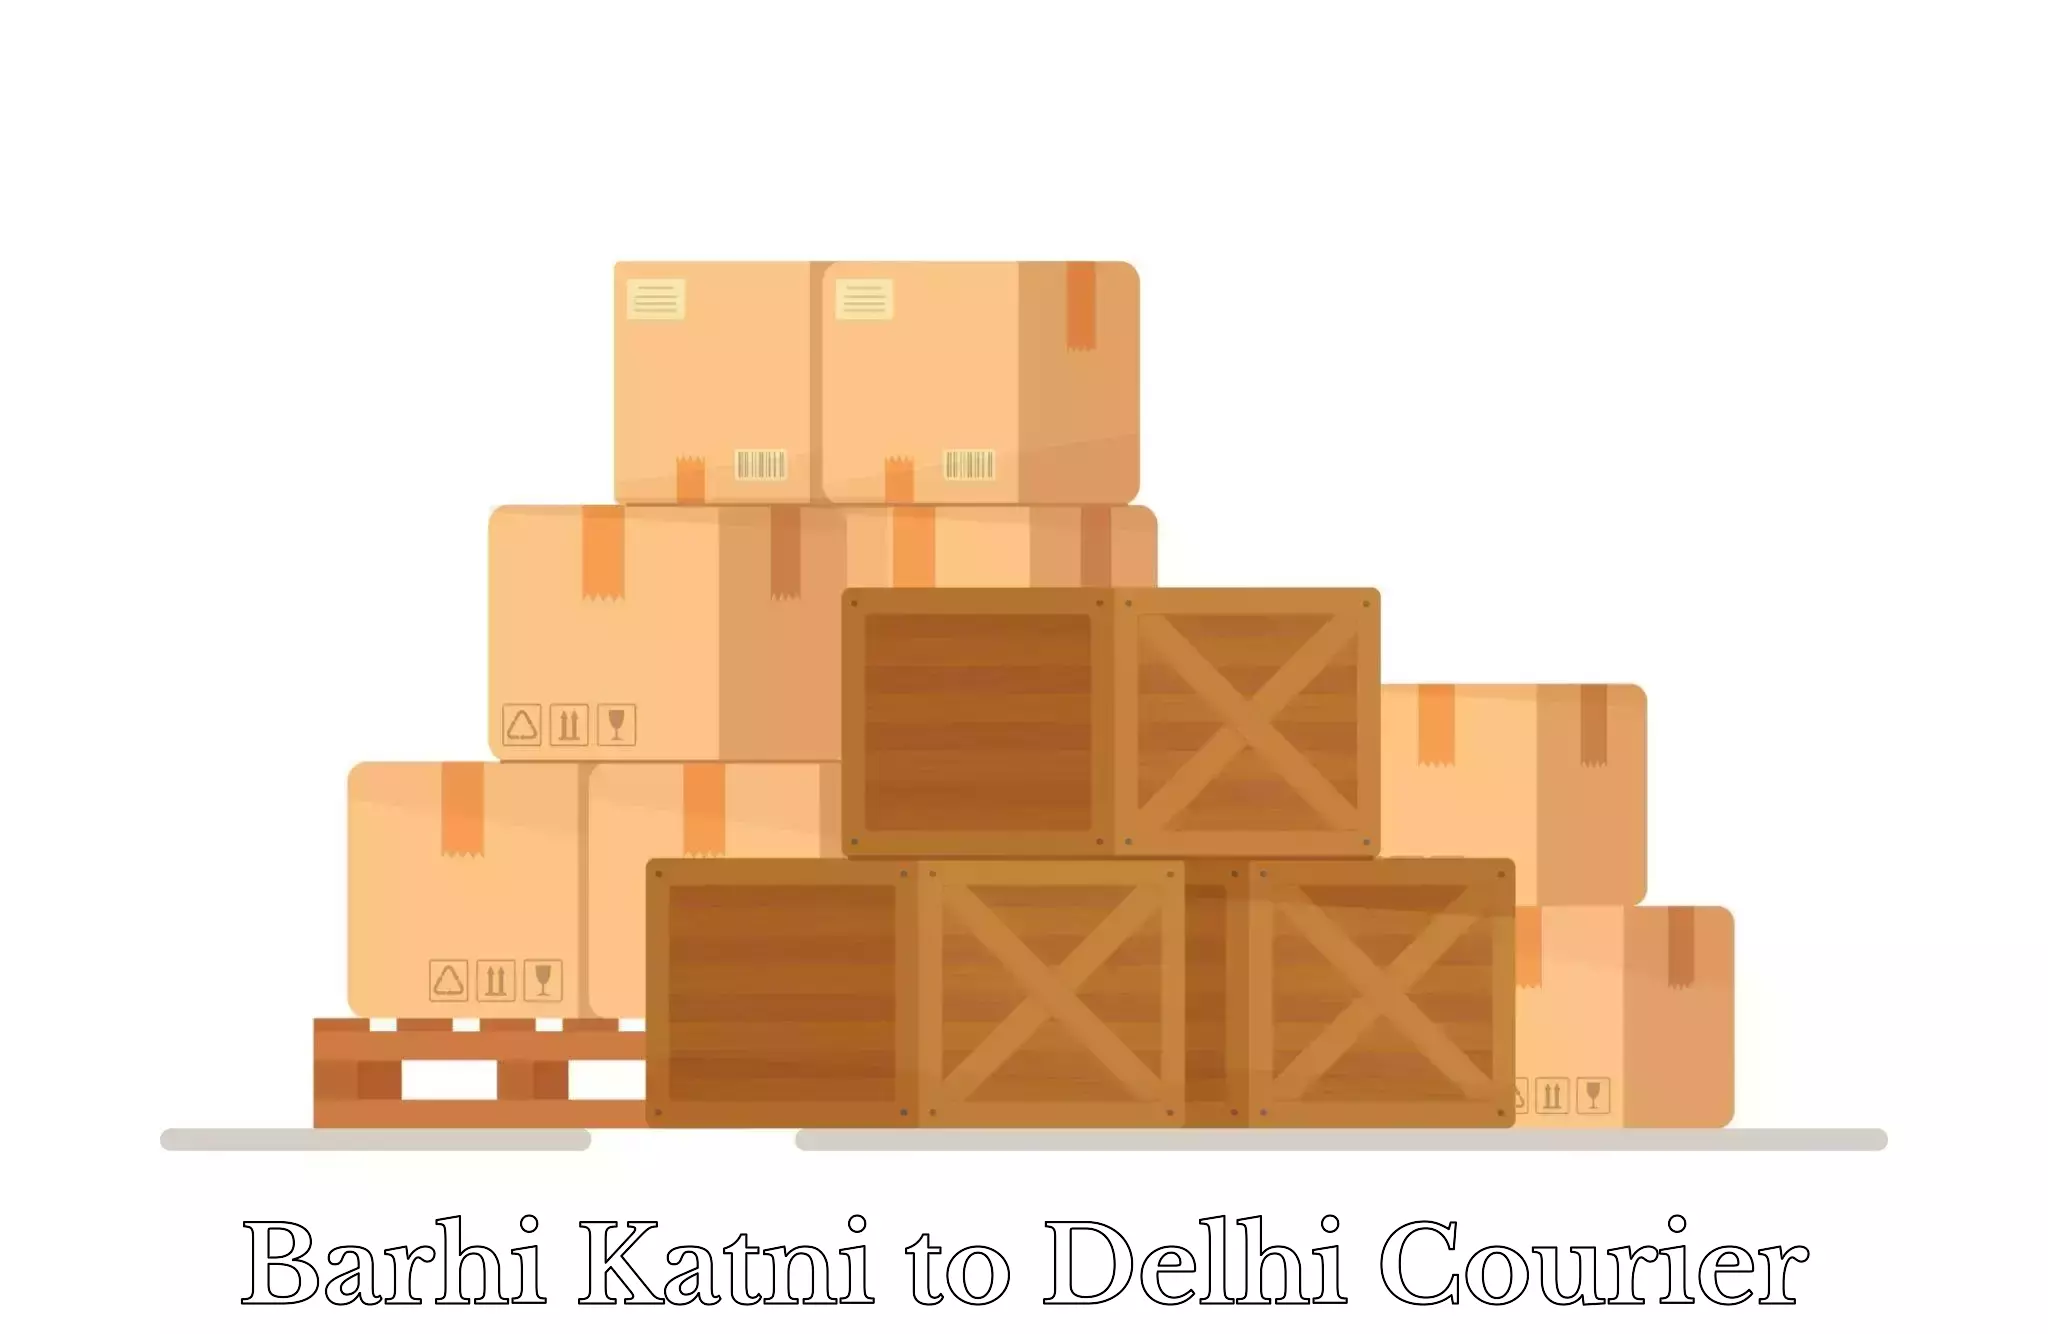 Same day luggage service Barhi Katni to Jamia Millia Islamia New Delhi